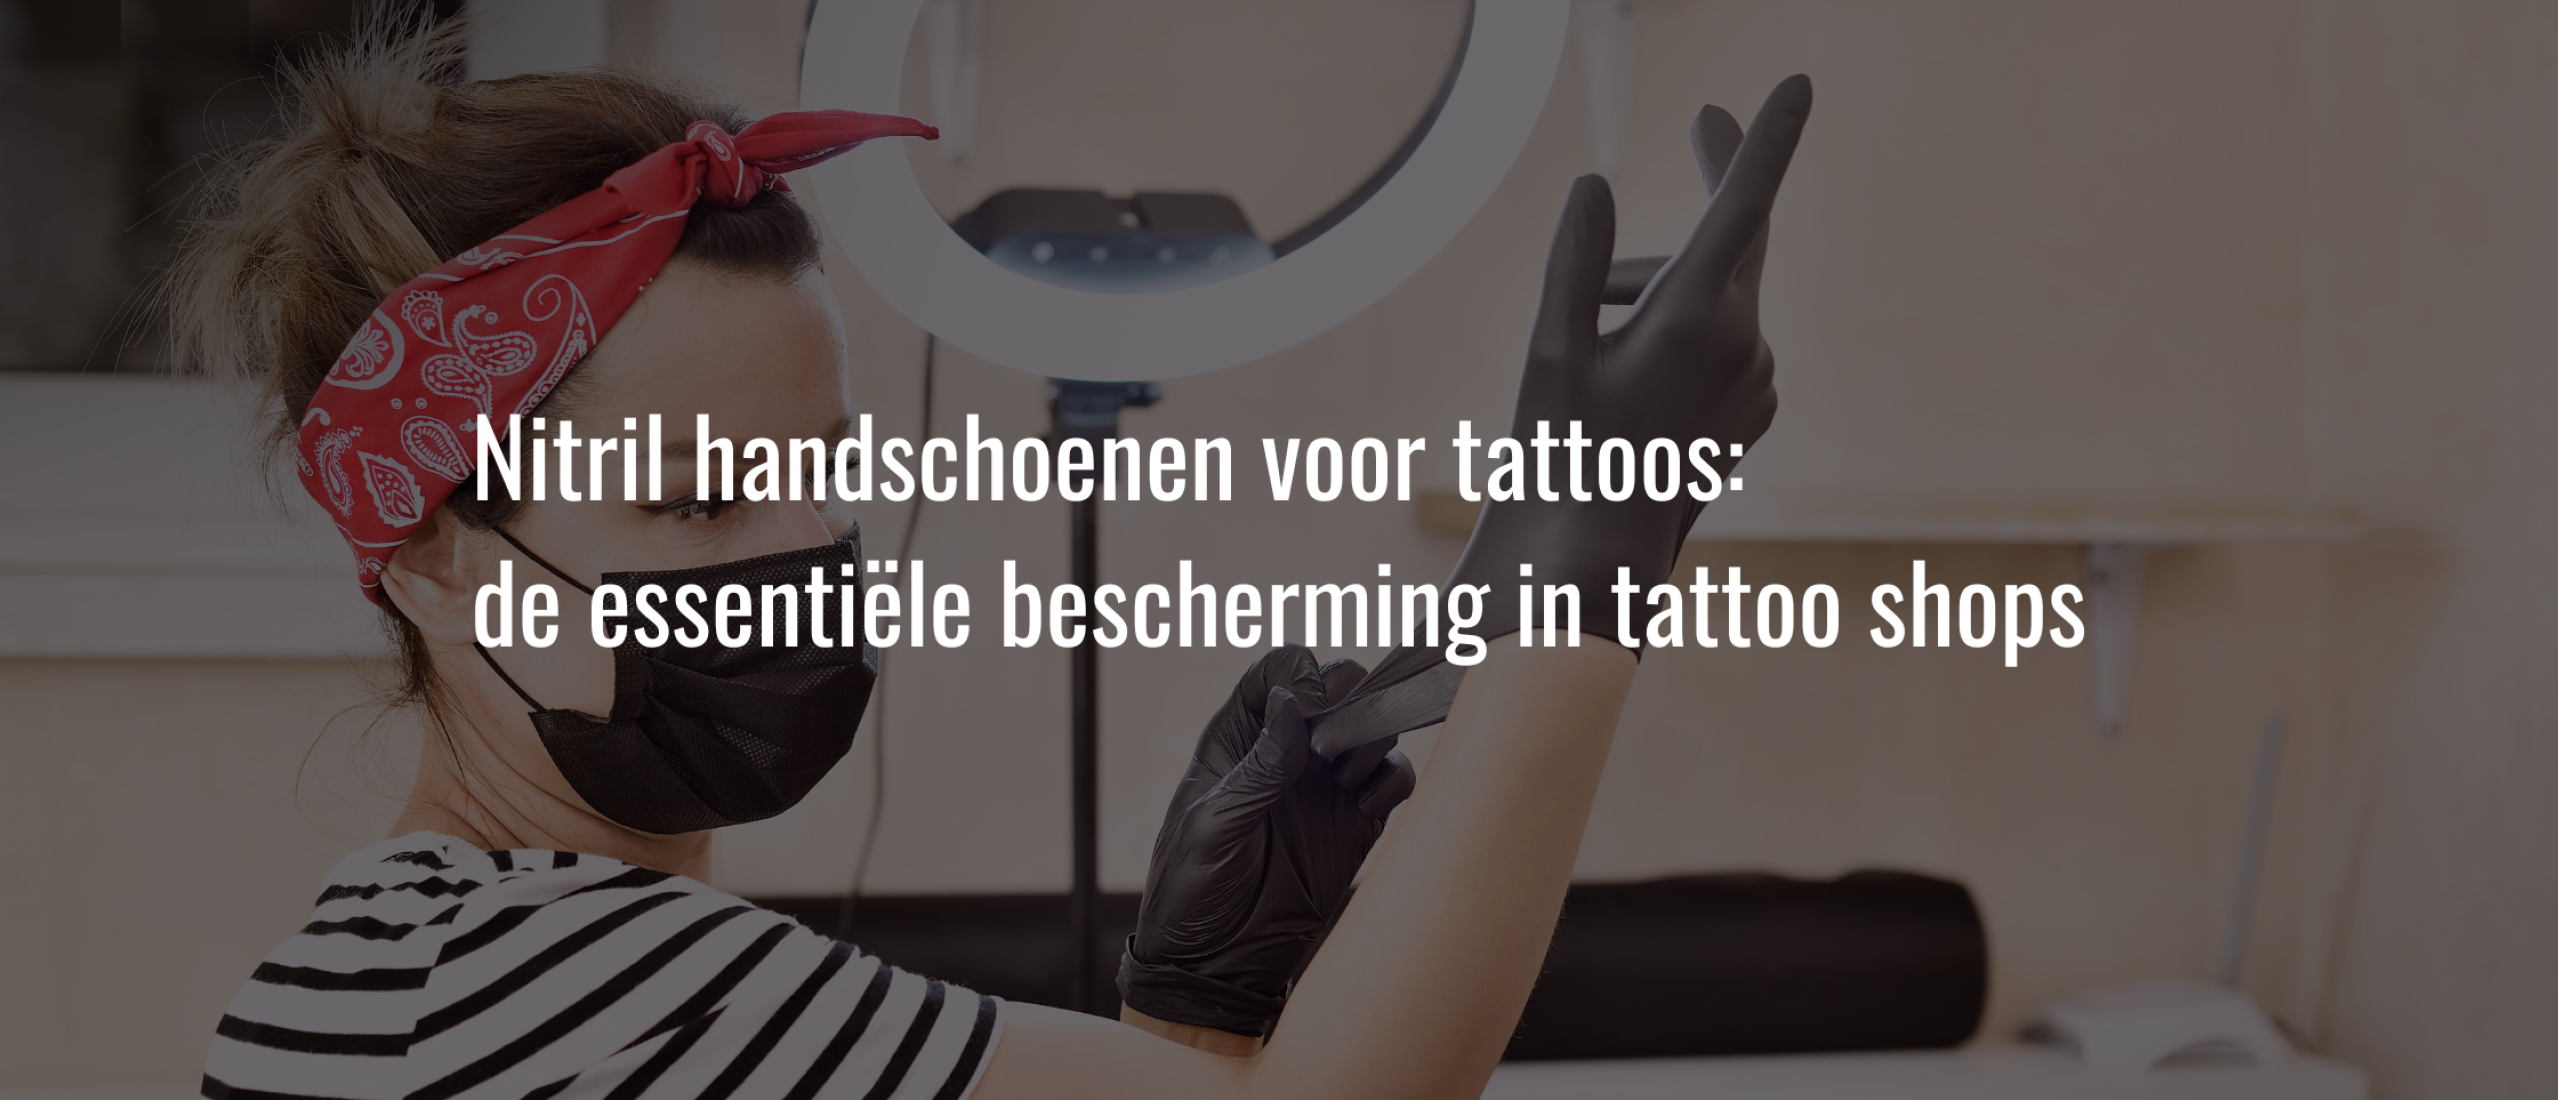 Nitril handschoenen voor tattoos: de essentiële bescherming in tattoo shops